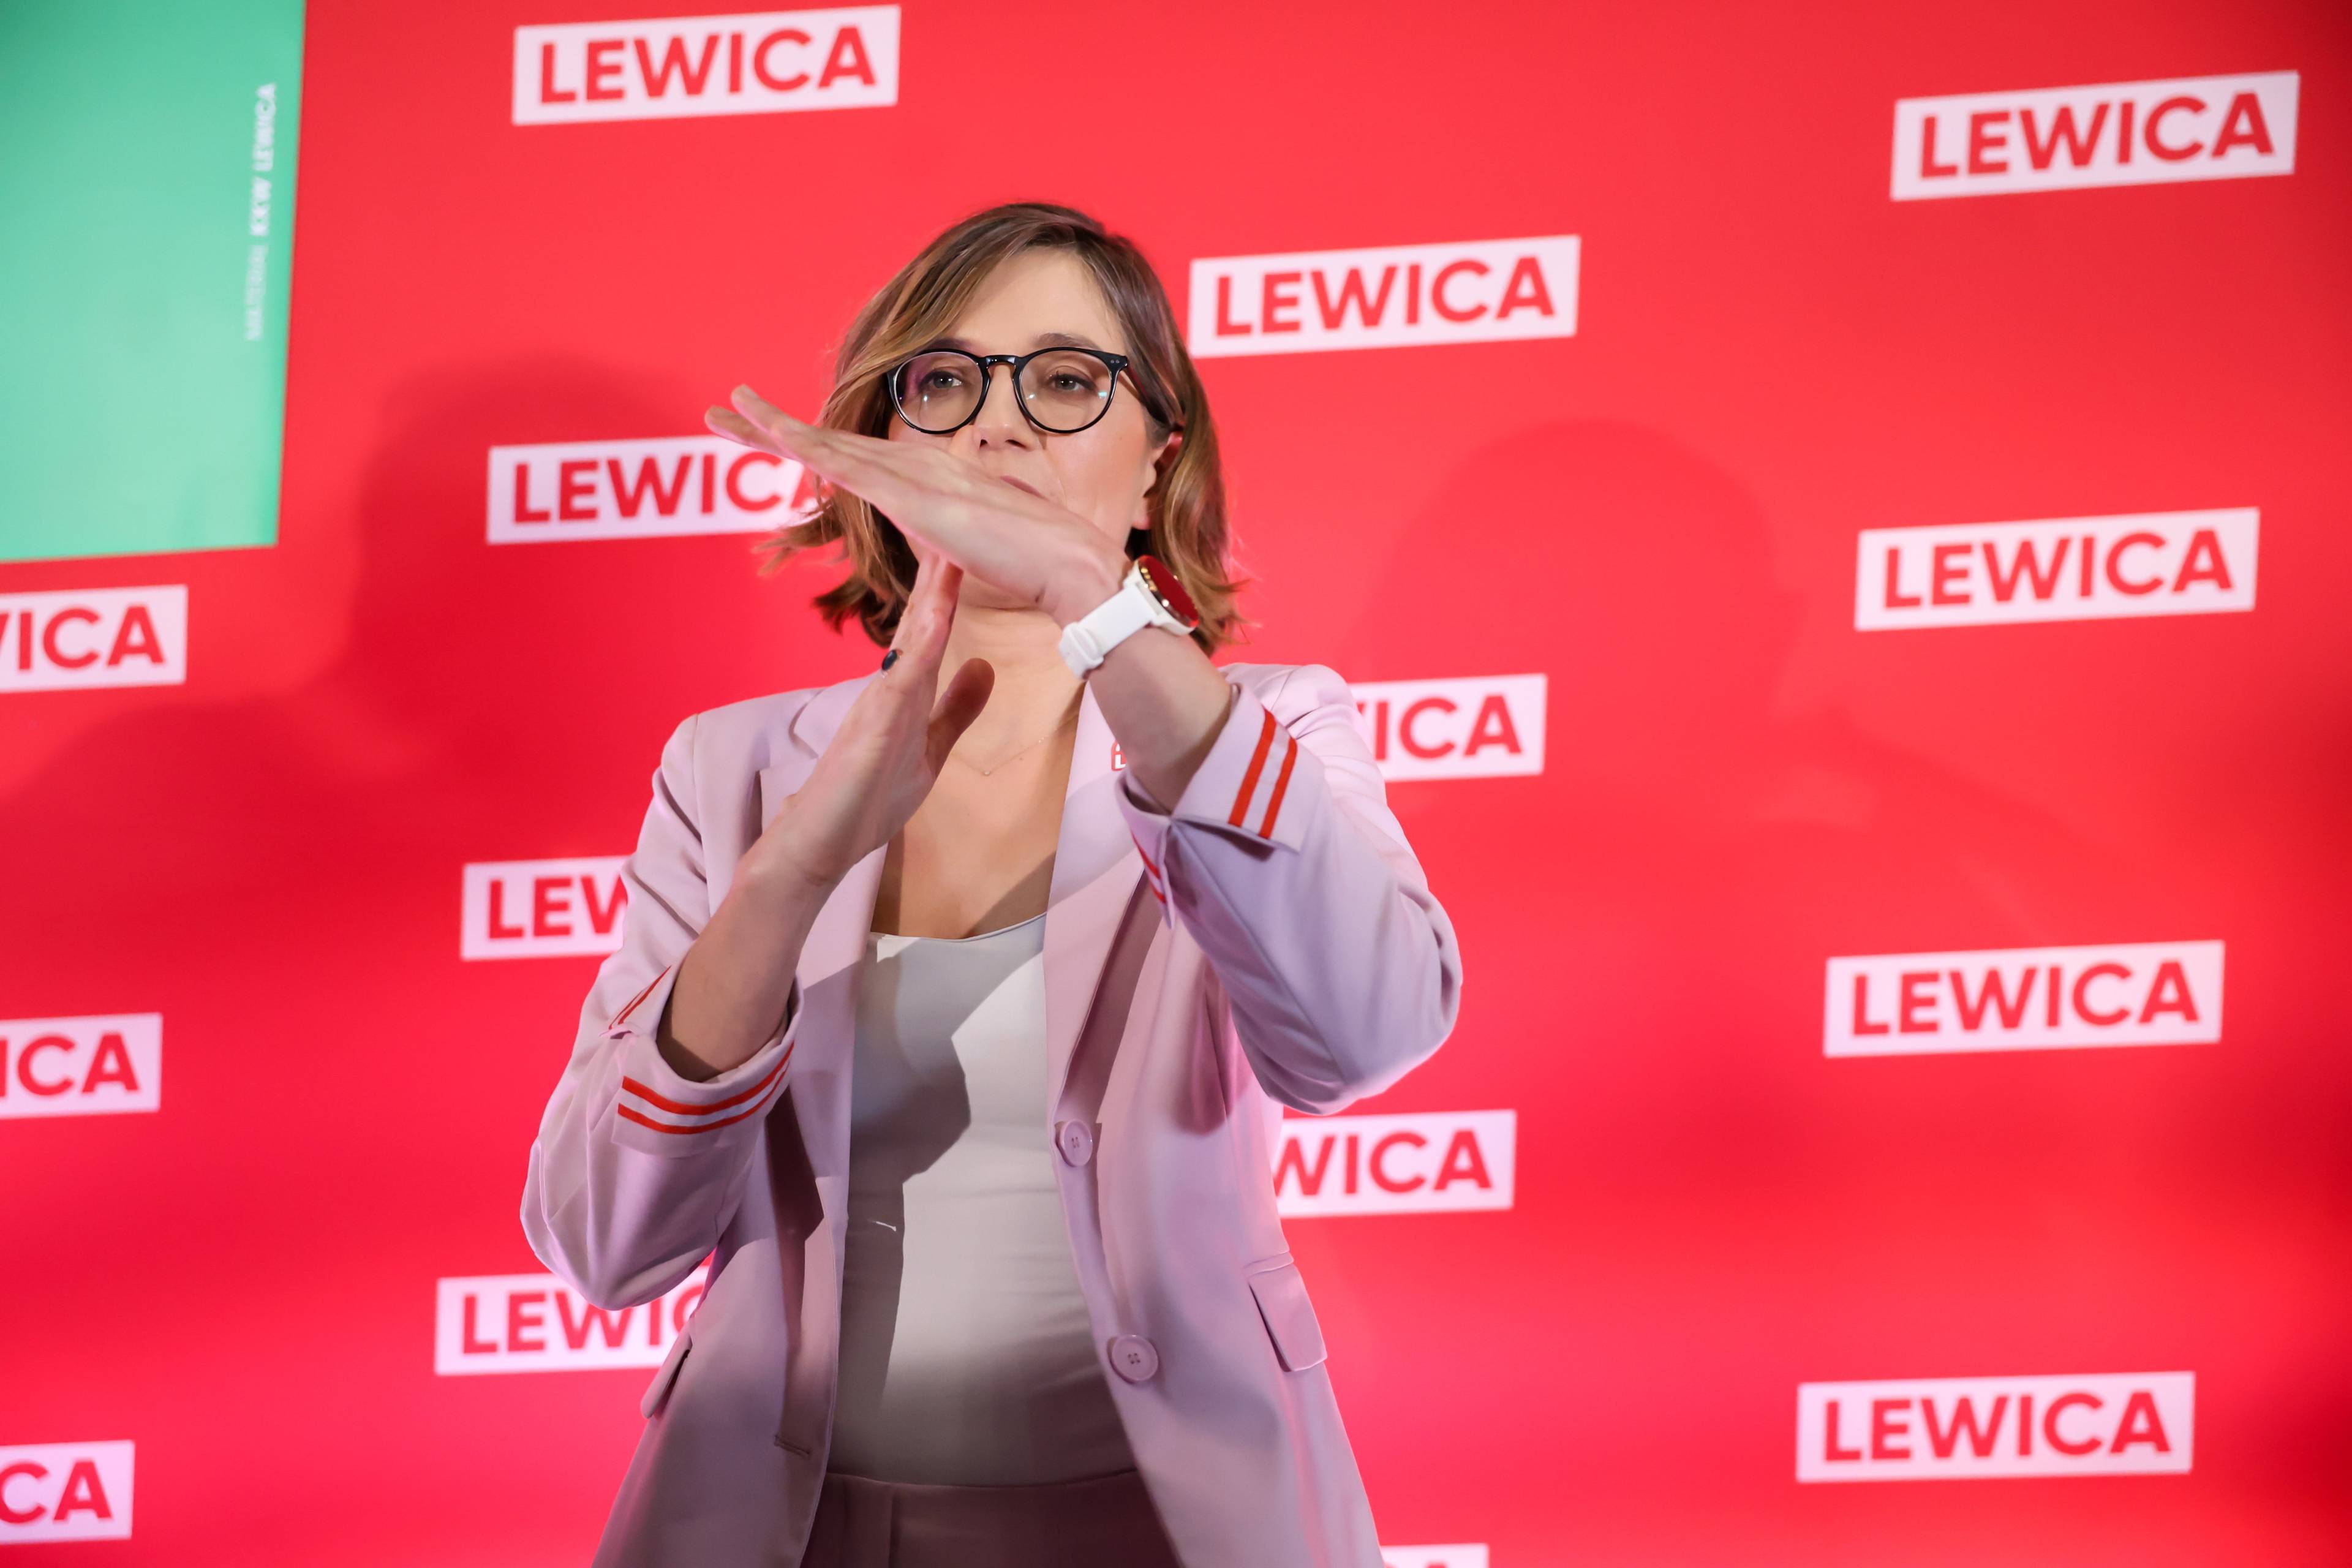 Młoda kobieta z włosami do ramion, w okularach (Biejat) stoi na tle czerwonej ścianki z logo Lewicy i pokazuje gest „czas się skończył”. Lewica"